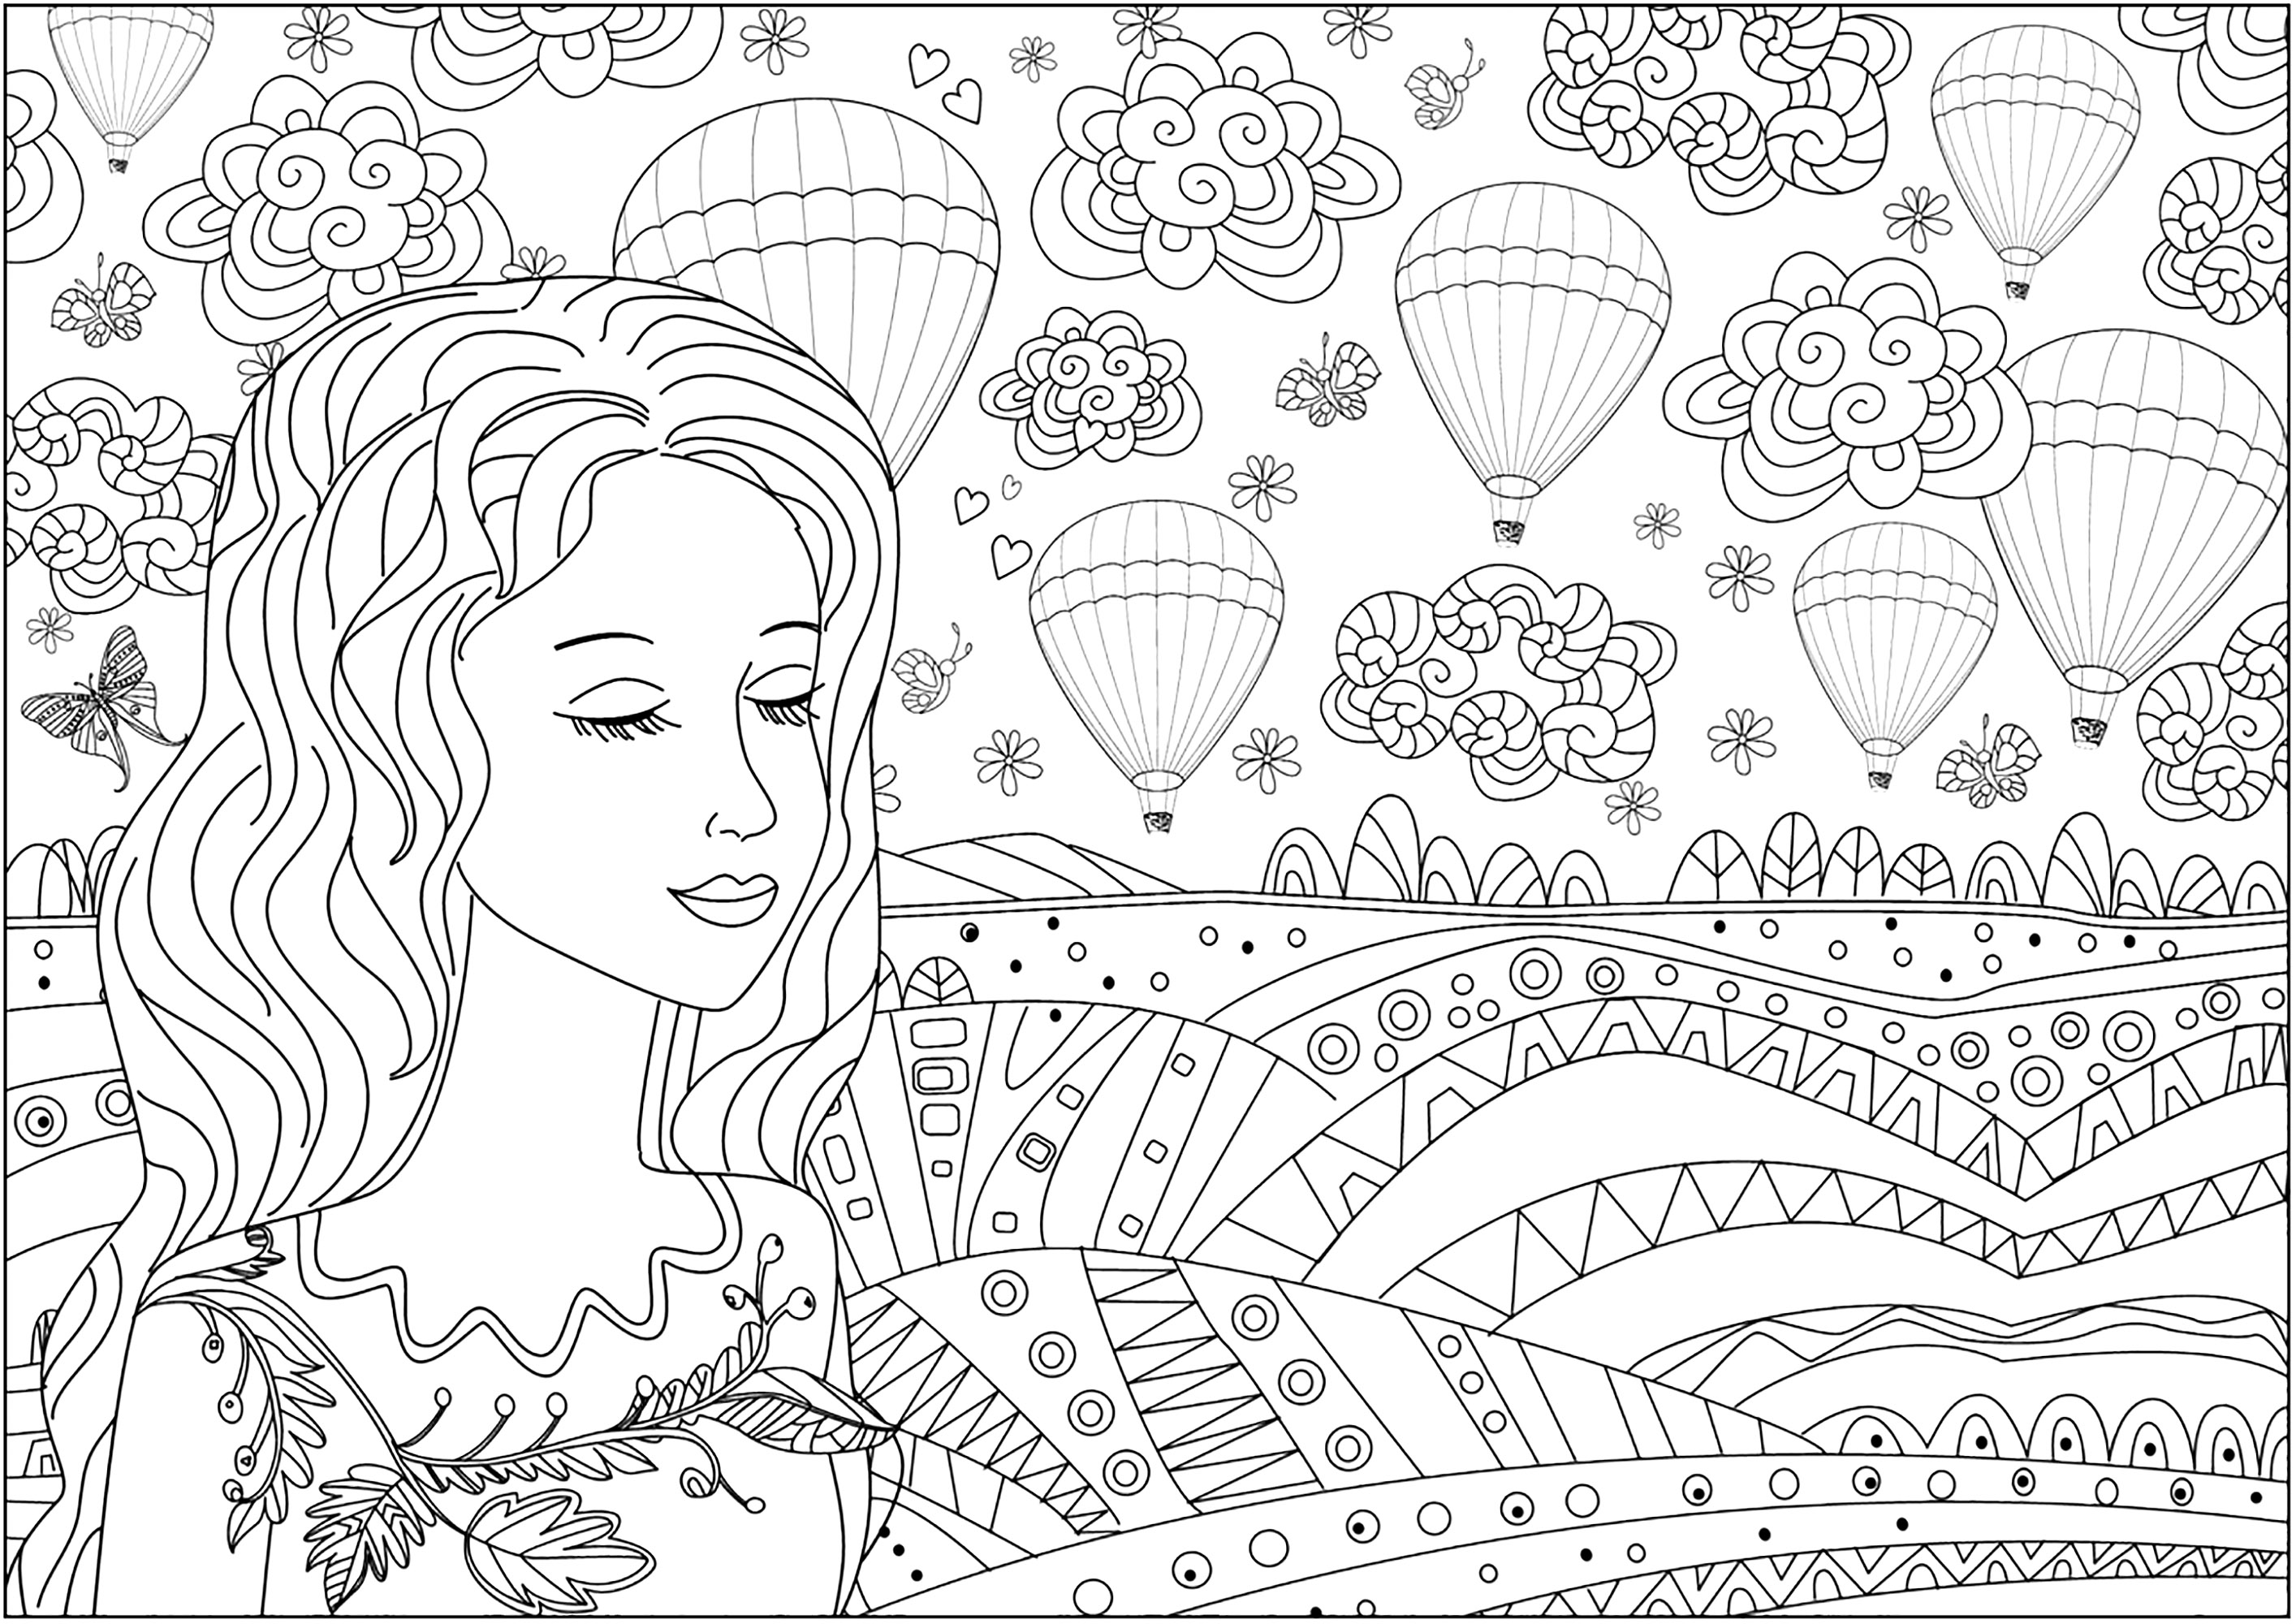 Mujer reflexiva delante de una llanura y globos aerostáticos en el cielo. Muchos detalles para colorear en esta bonita y original página para colorear.